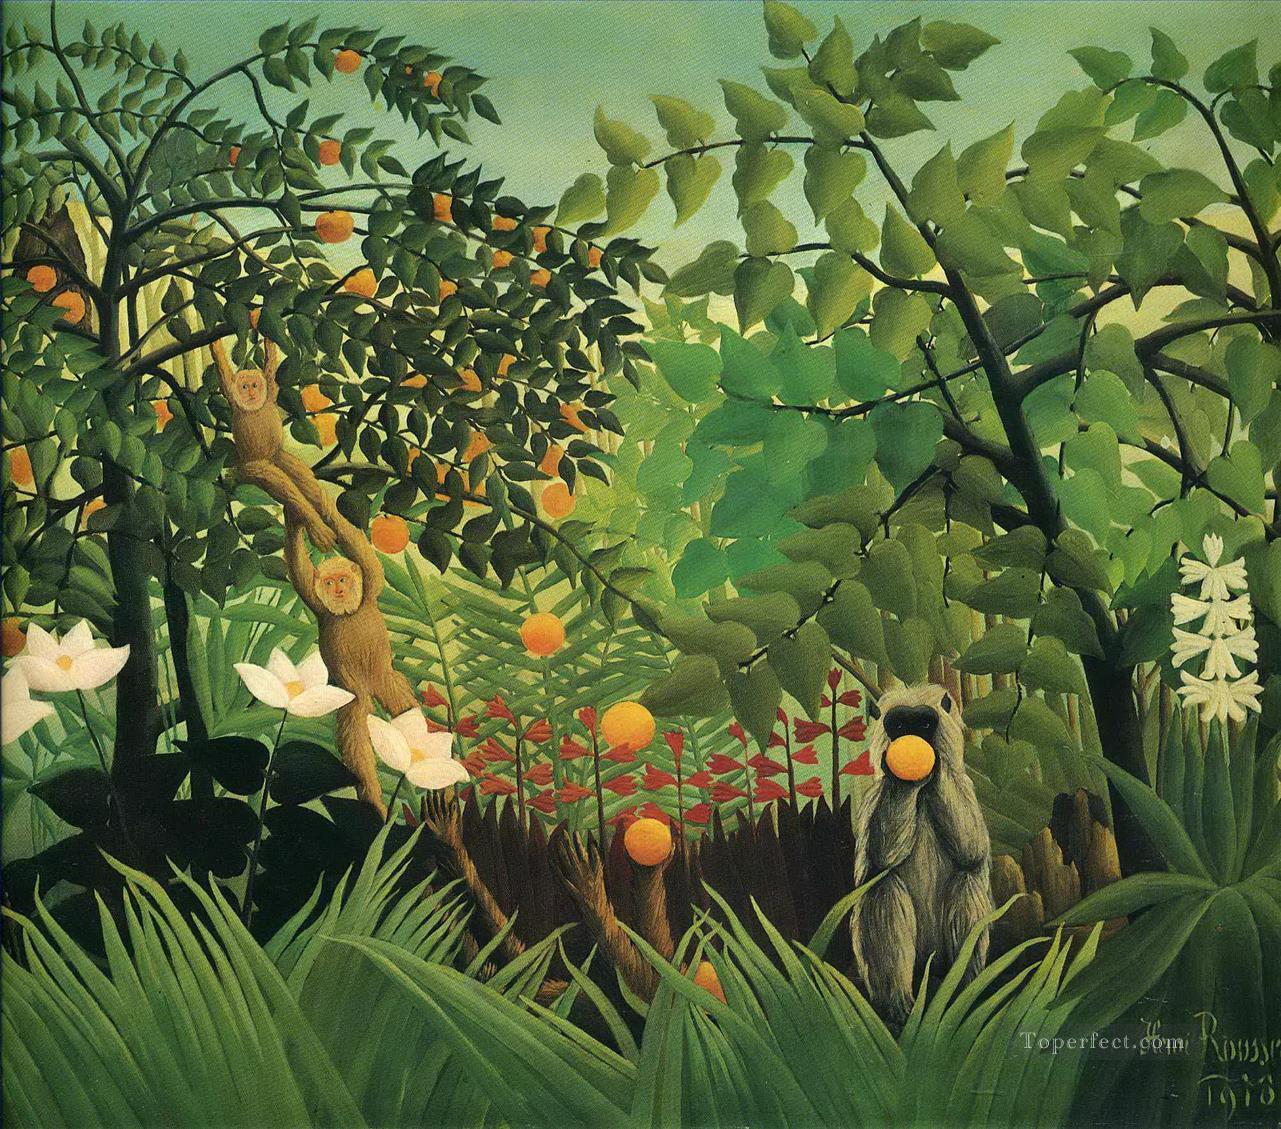 エキゾチックな風景 1910年 アンリ・ルソー ポスト印象派 素朴な原始主義油絵